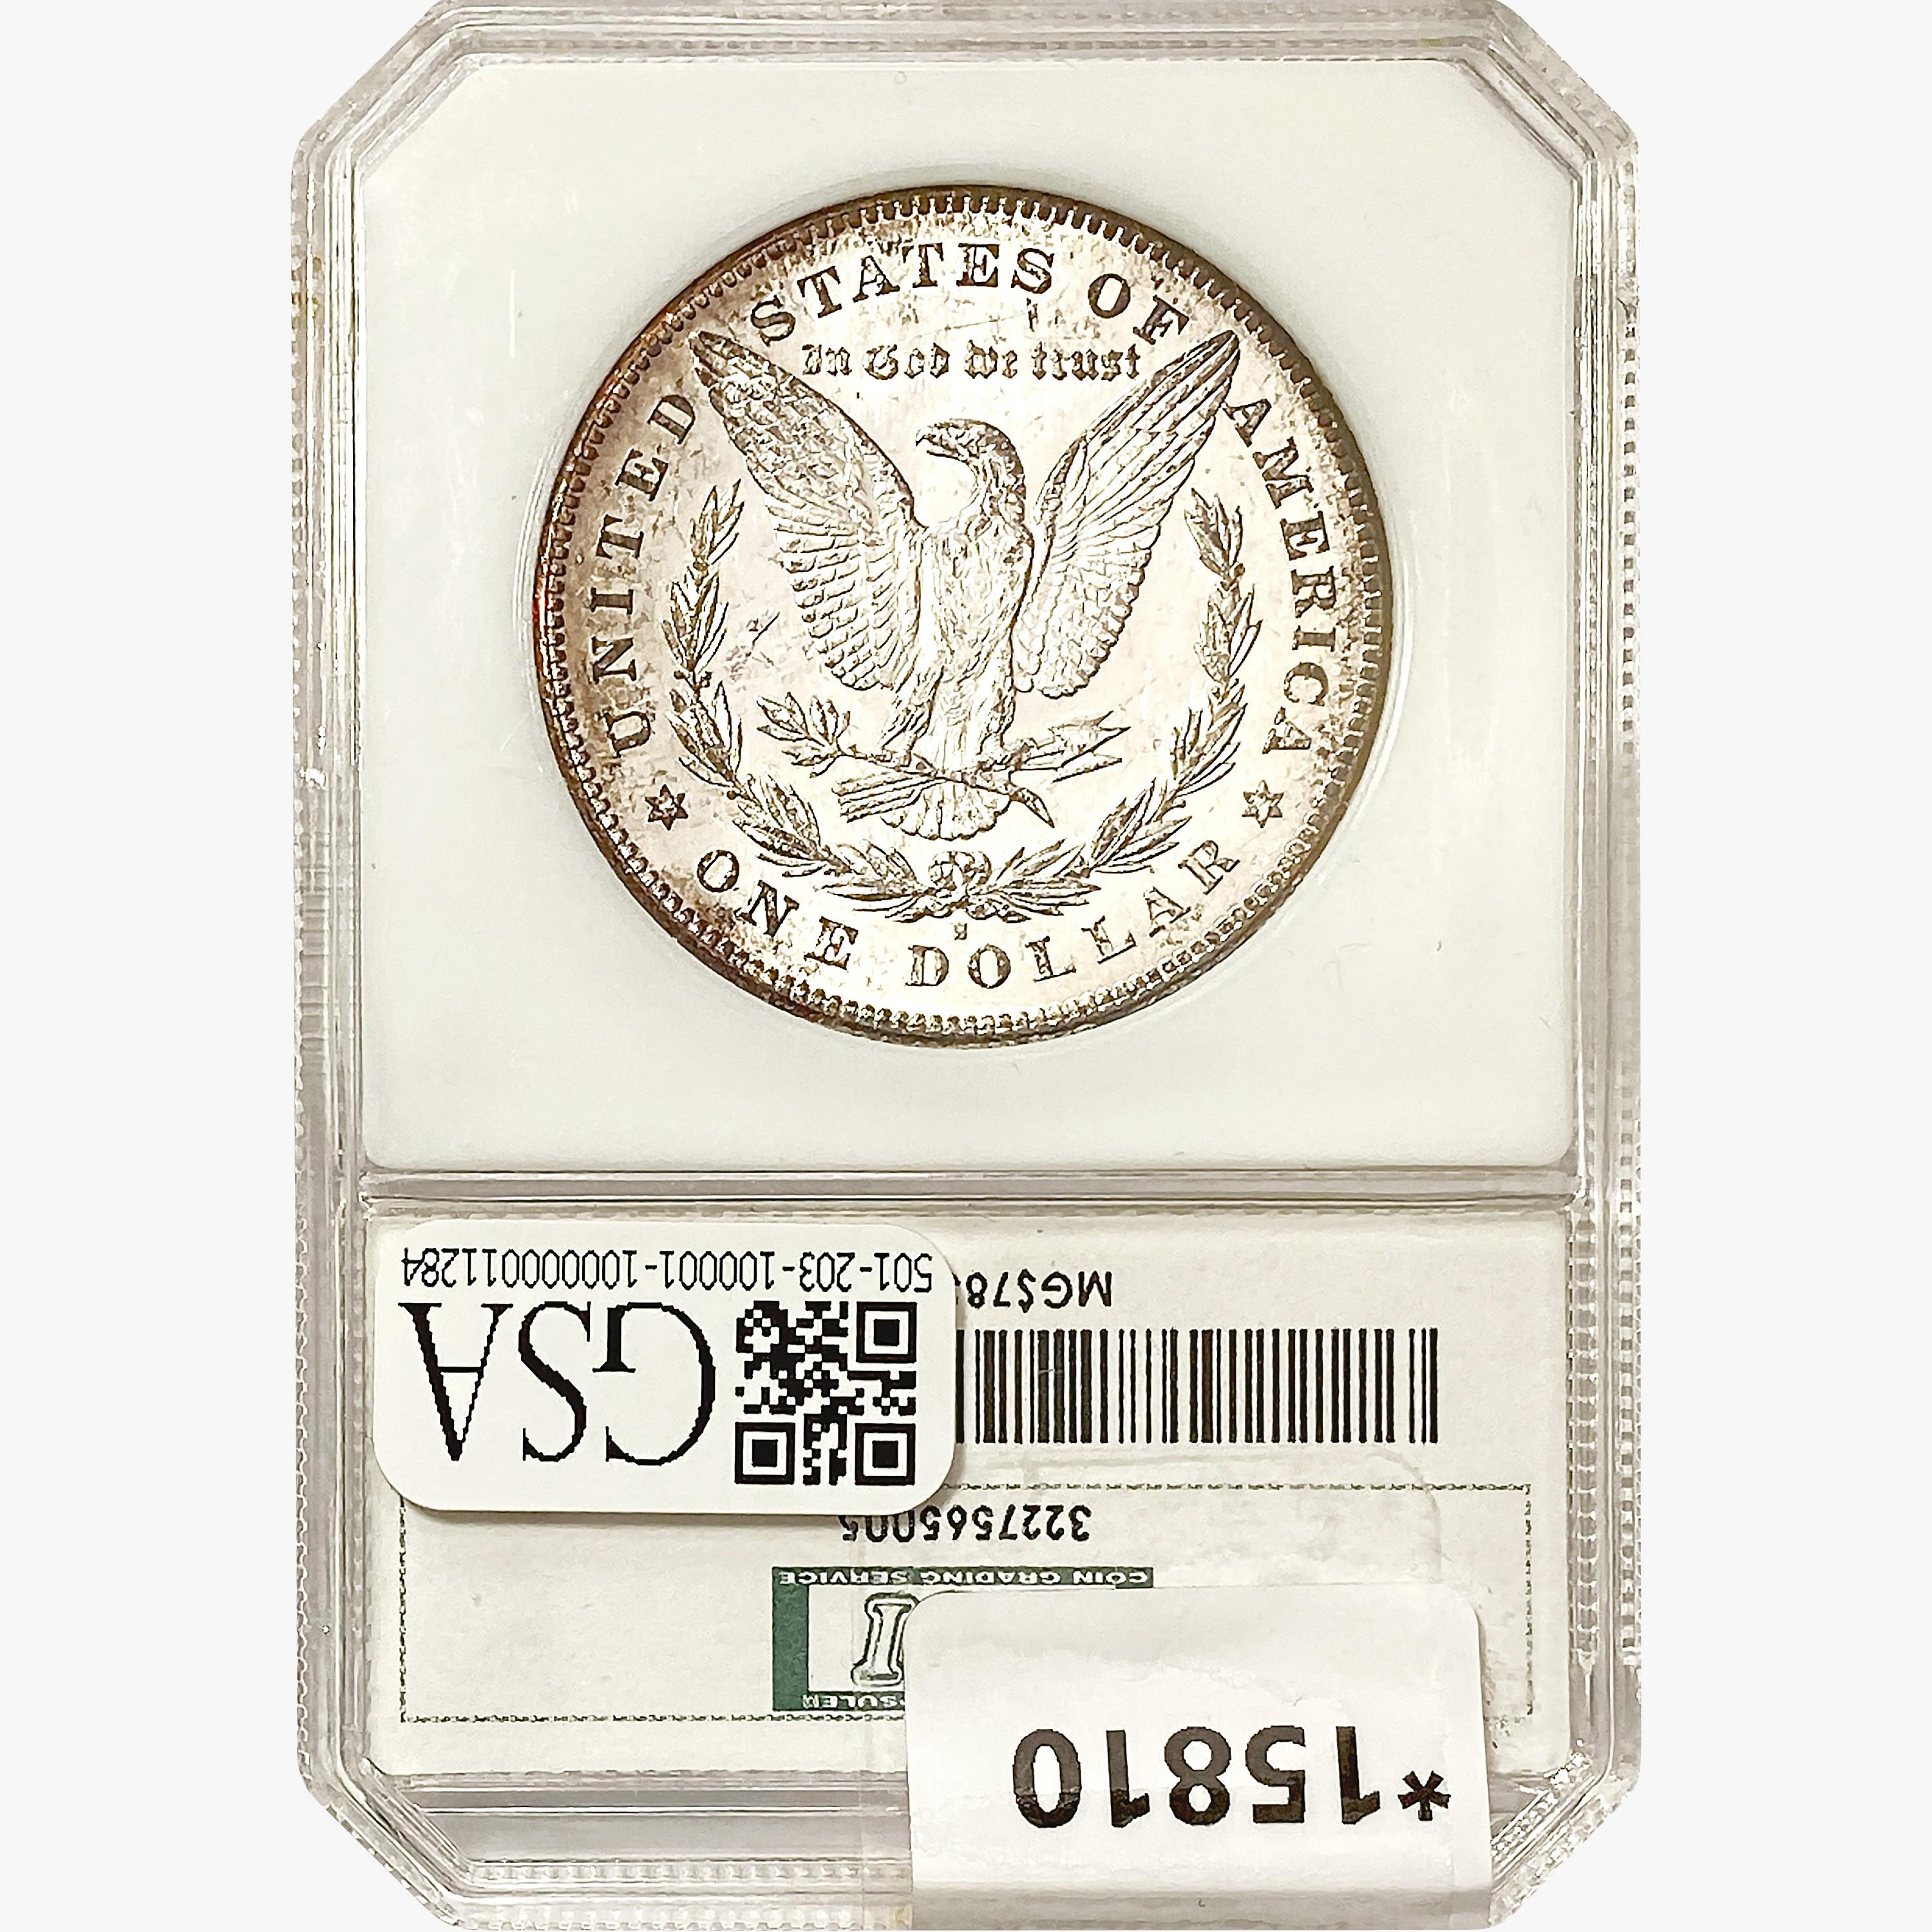 1878-S Morgan Silver Dollar PCI AU58